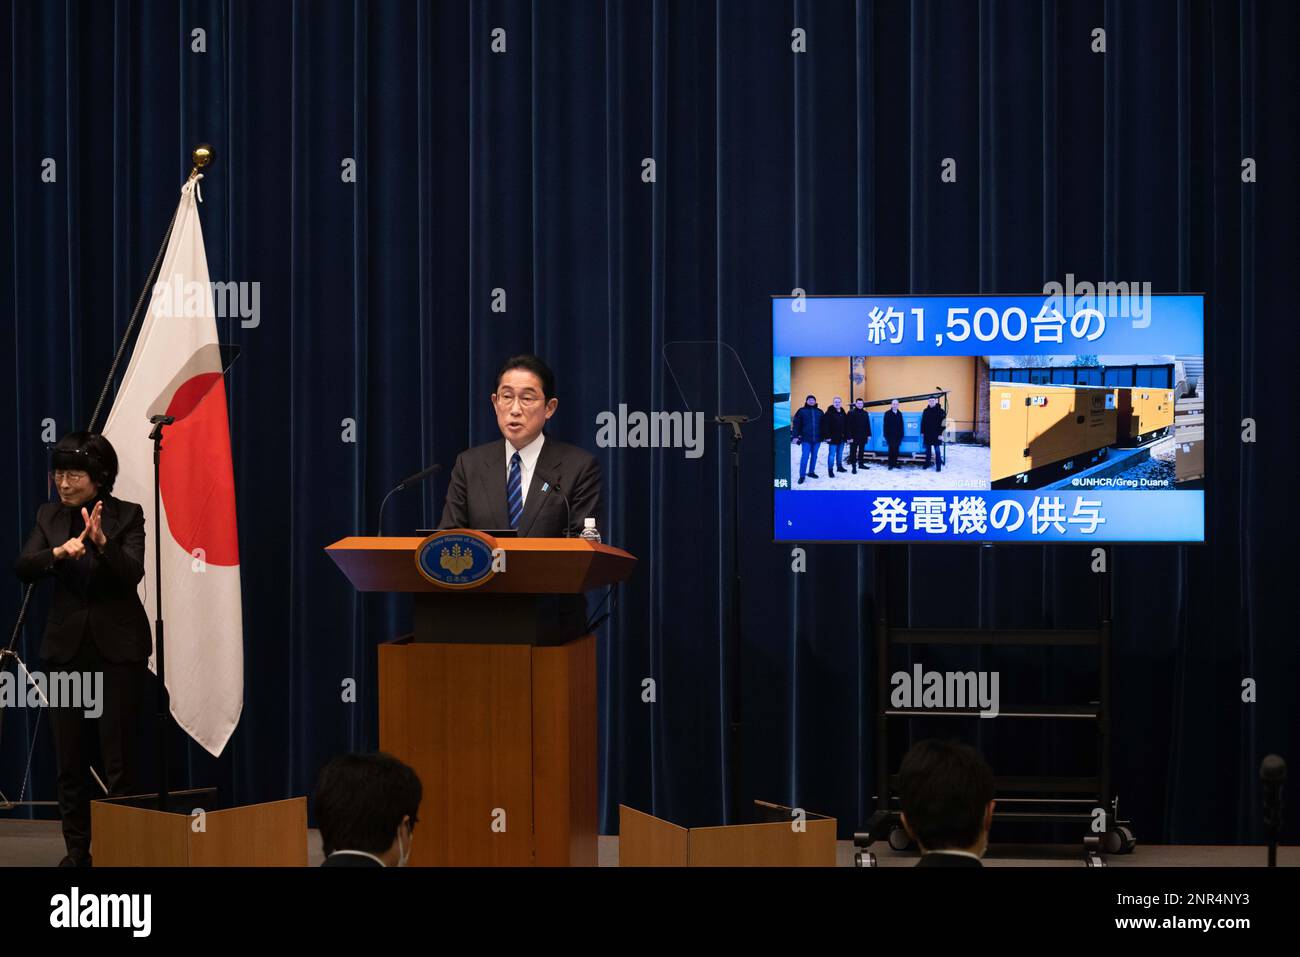 Der japanische Premierminister Fumio Kishida sprach auf seiner Pressekonferenz am 24. Februar 2023 darüber, wie Japan die Ukraine während eines Jahres russischer Invasion unterstützte. (Foto: Stanislav Kogiku/AFLO) Stockfoto